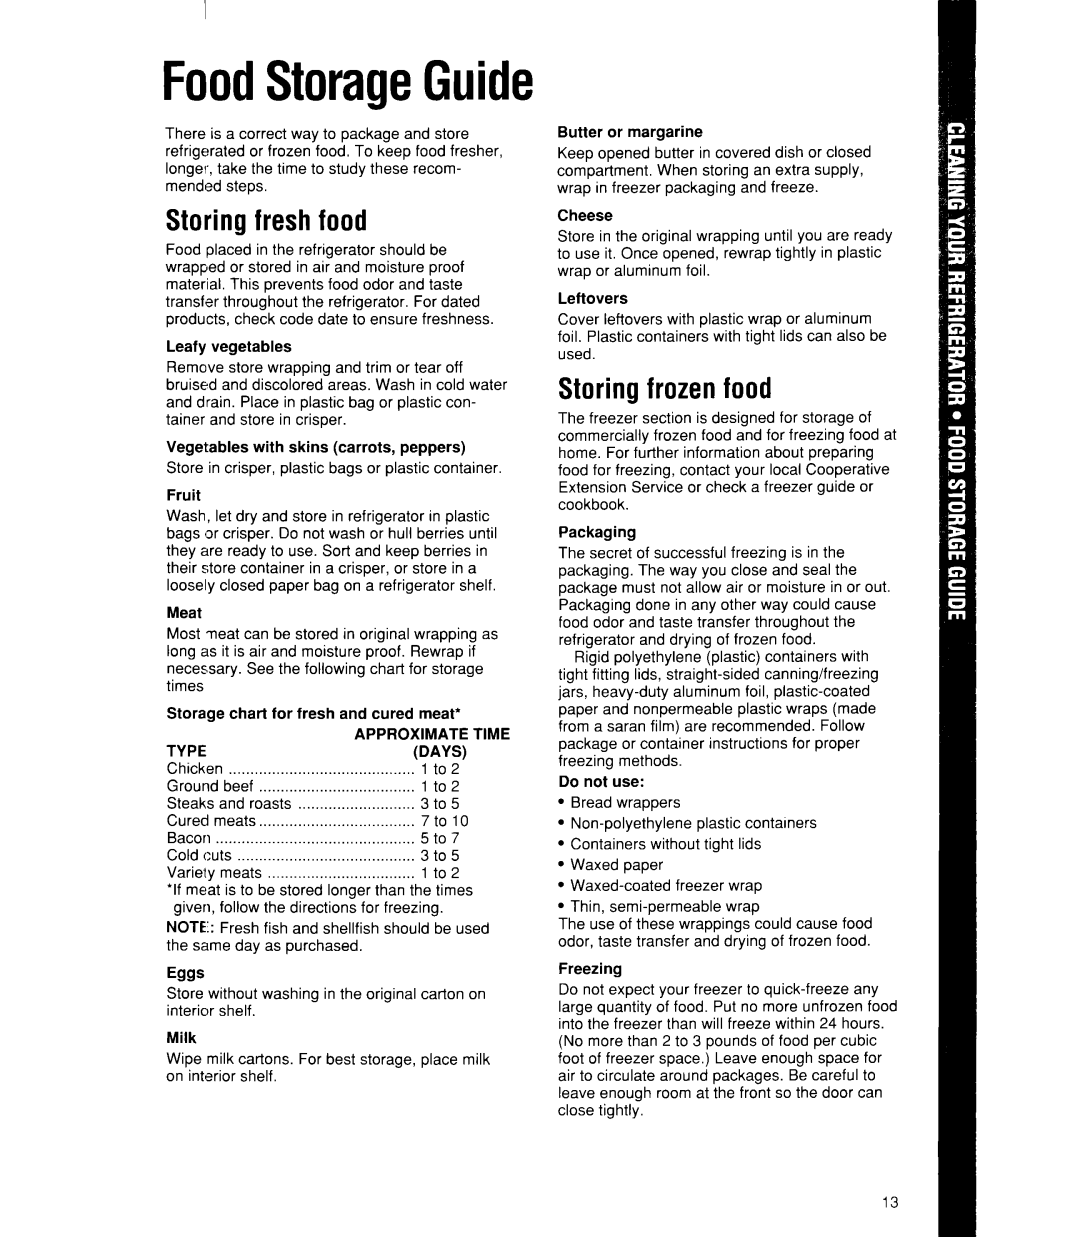 Whirlpool ED22DK, ED22RK manual FoodStorageGuide, Storing fresh food, Storing frozen food, Eggs 